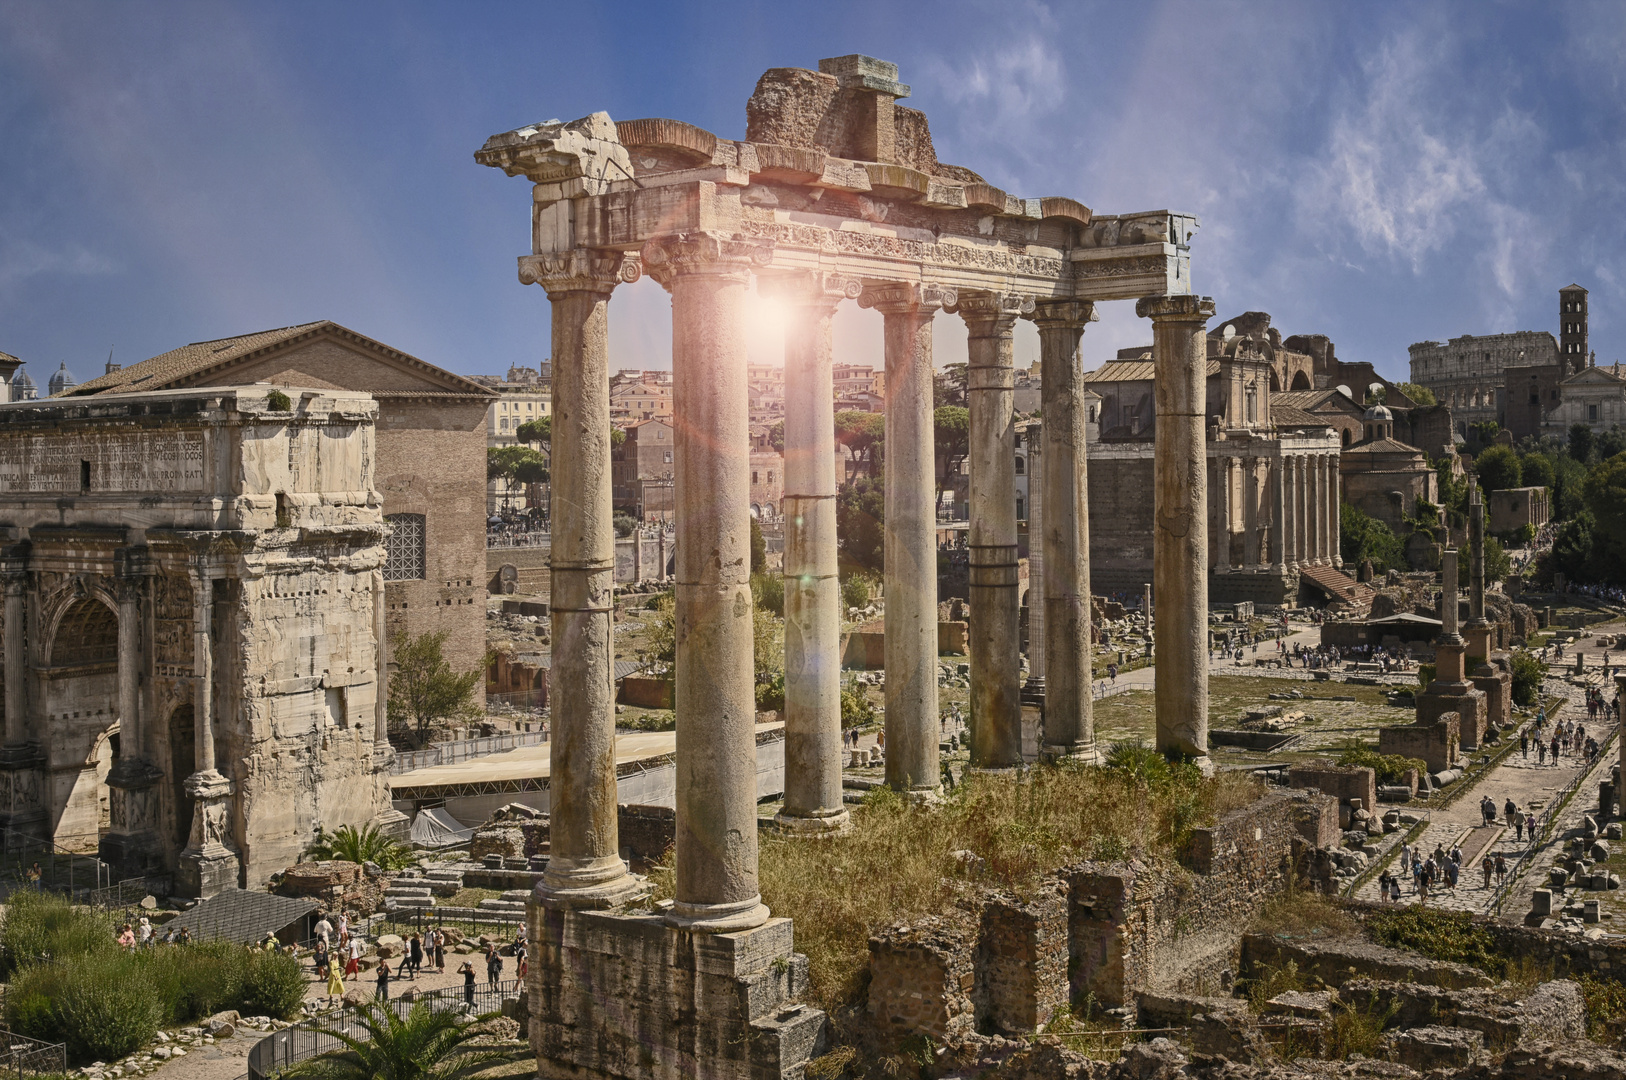 Antike Roma  Forum Romanum